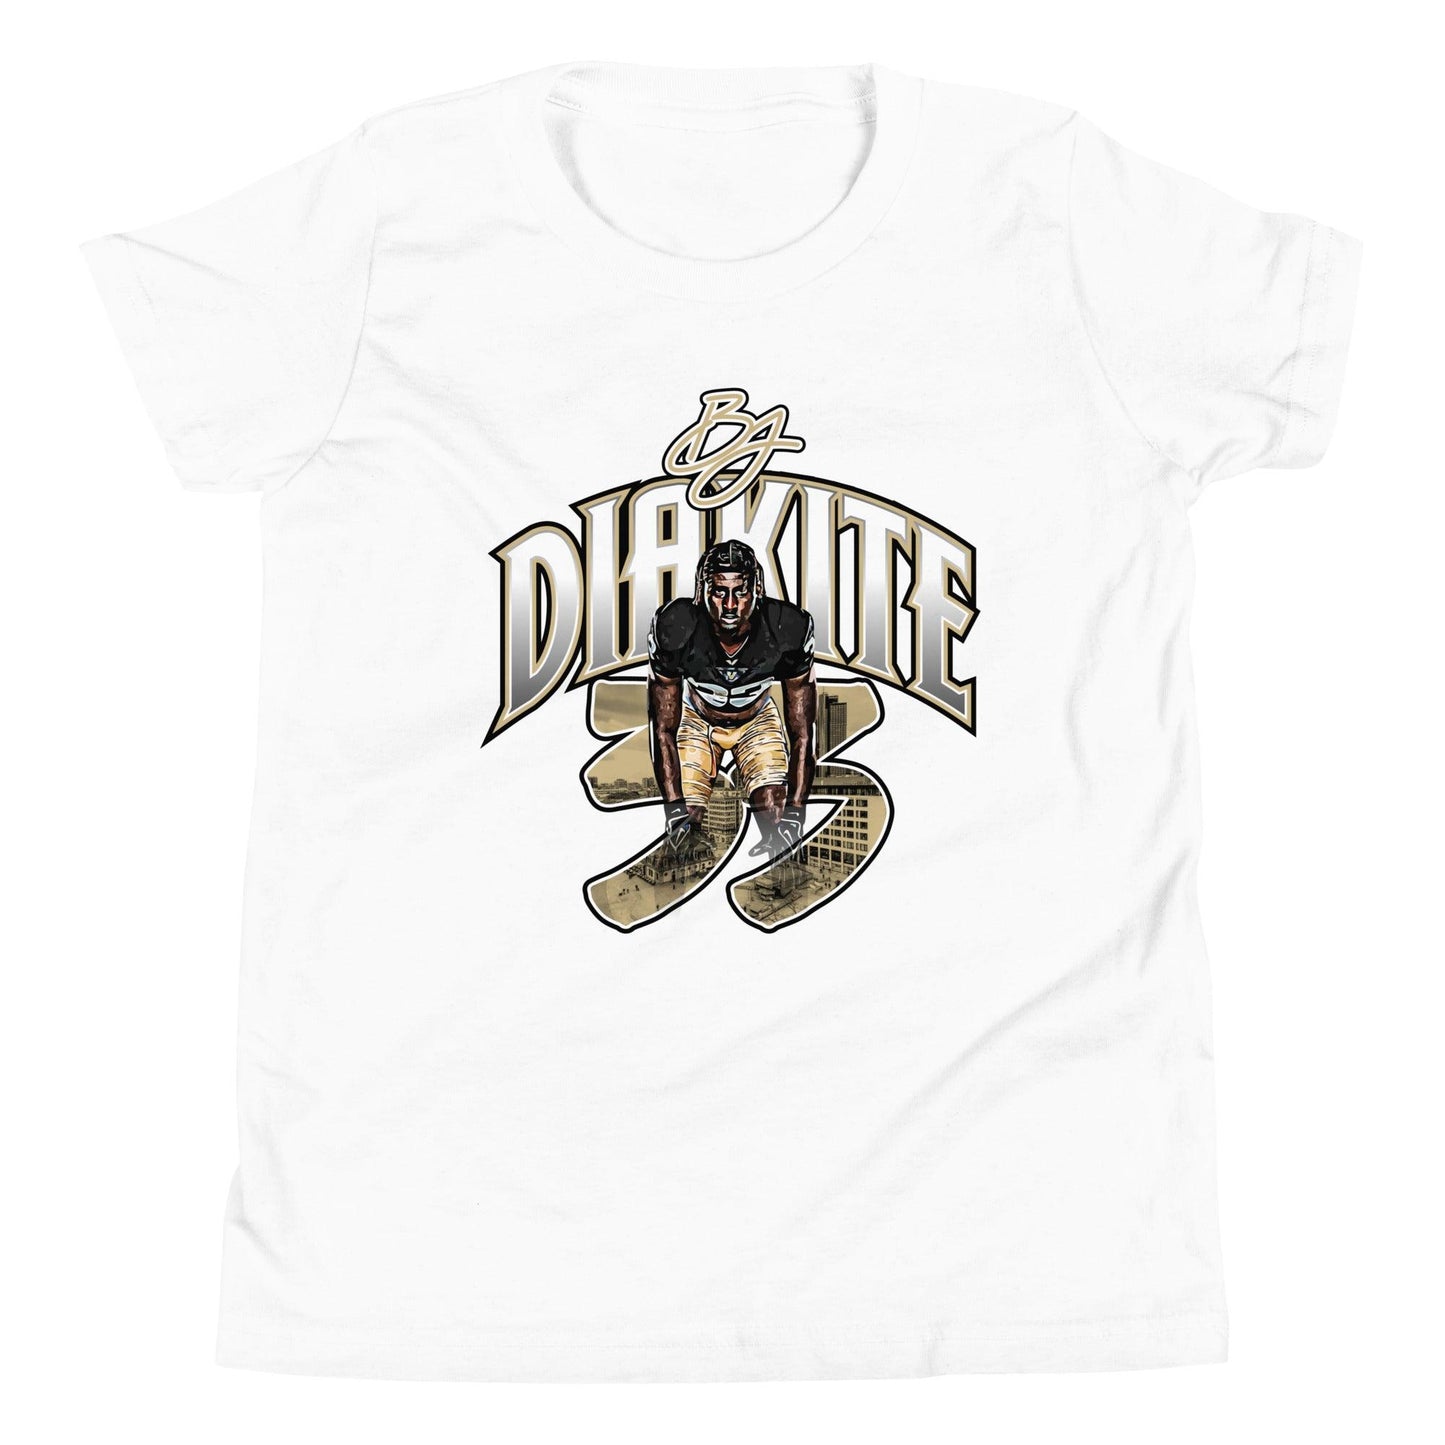 BJ Diakite "Gameday" Youth T-Shirt - Fan Arch